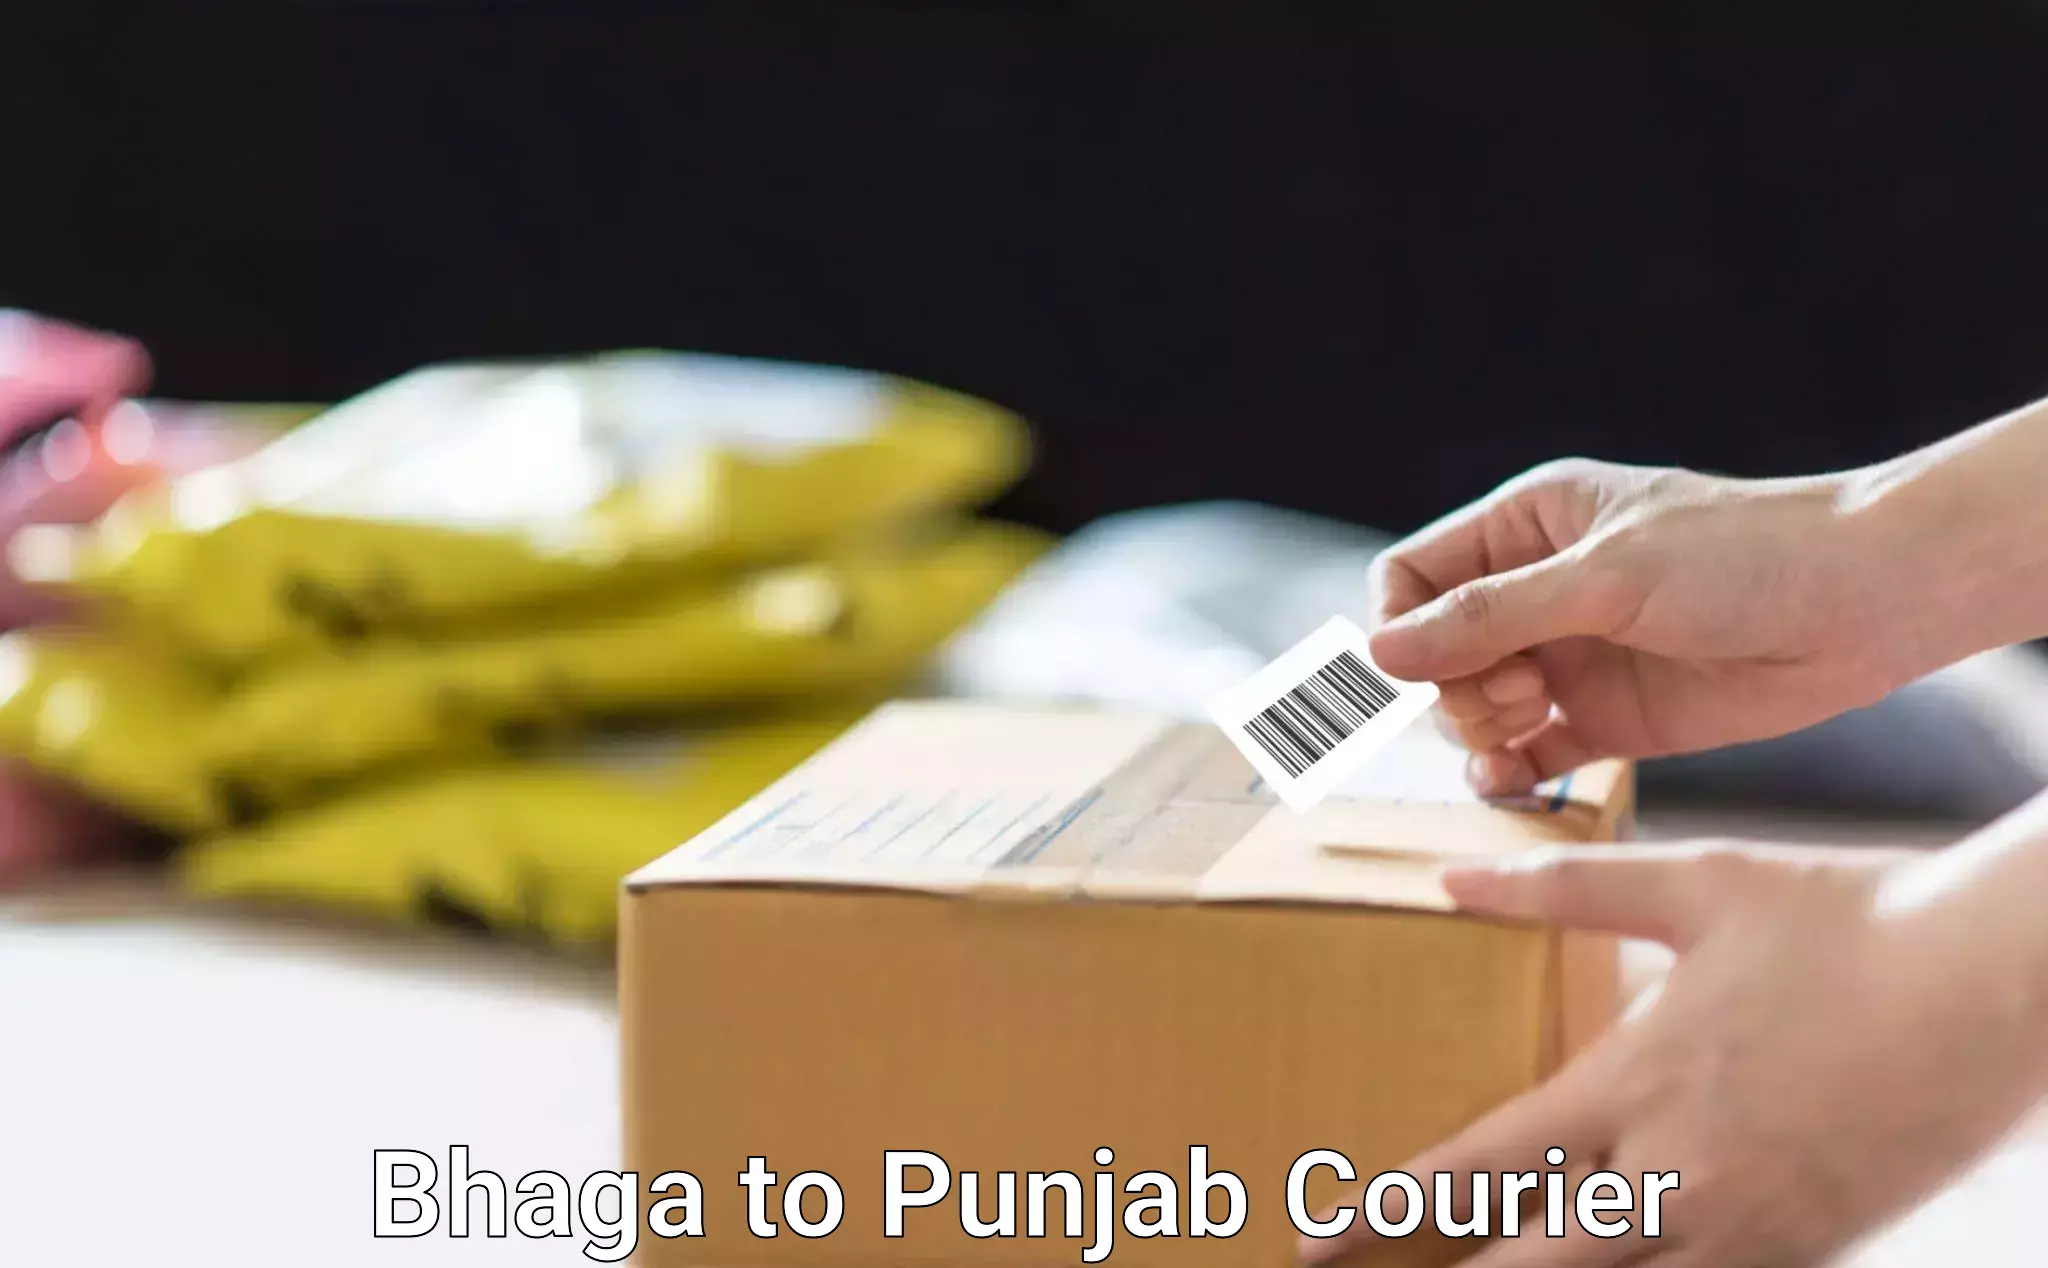 Package delivery network Bhaga to Garhshankar